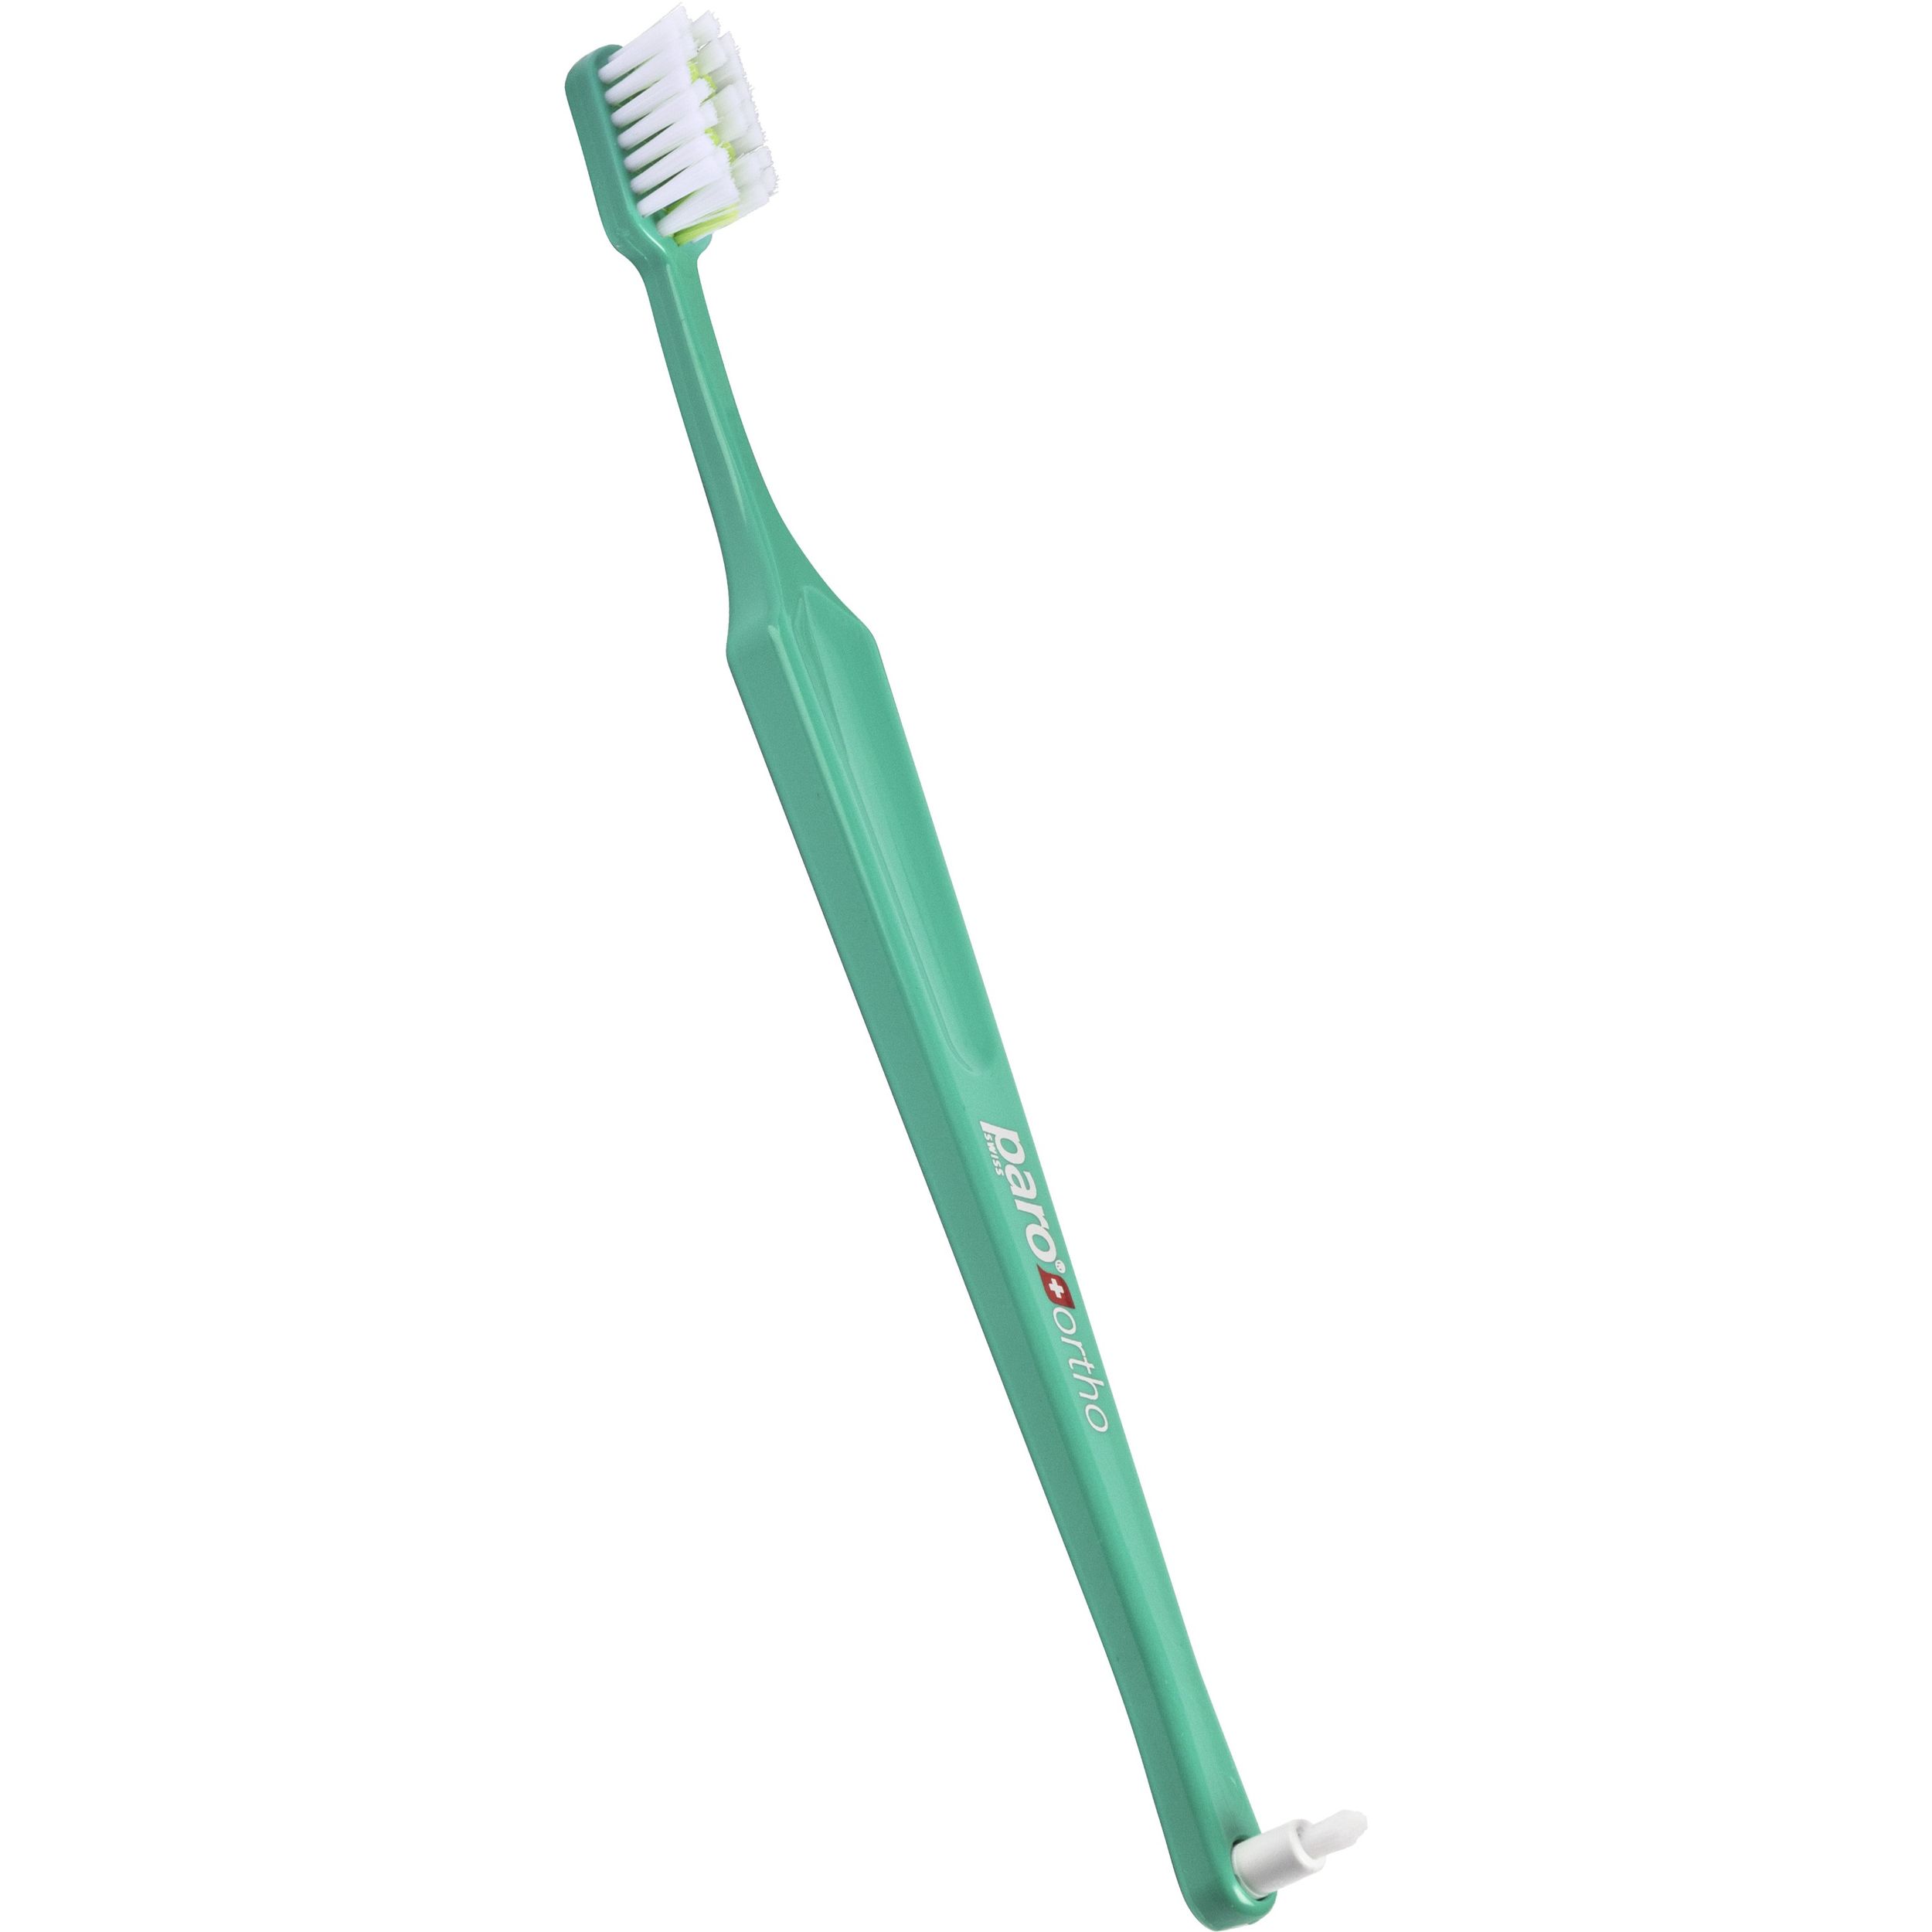 Зубная щетка Paro Swiss Ortho Brush ортодонтическая с монопучковой насадкой зеленая - фото 1